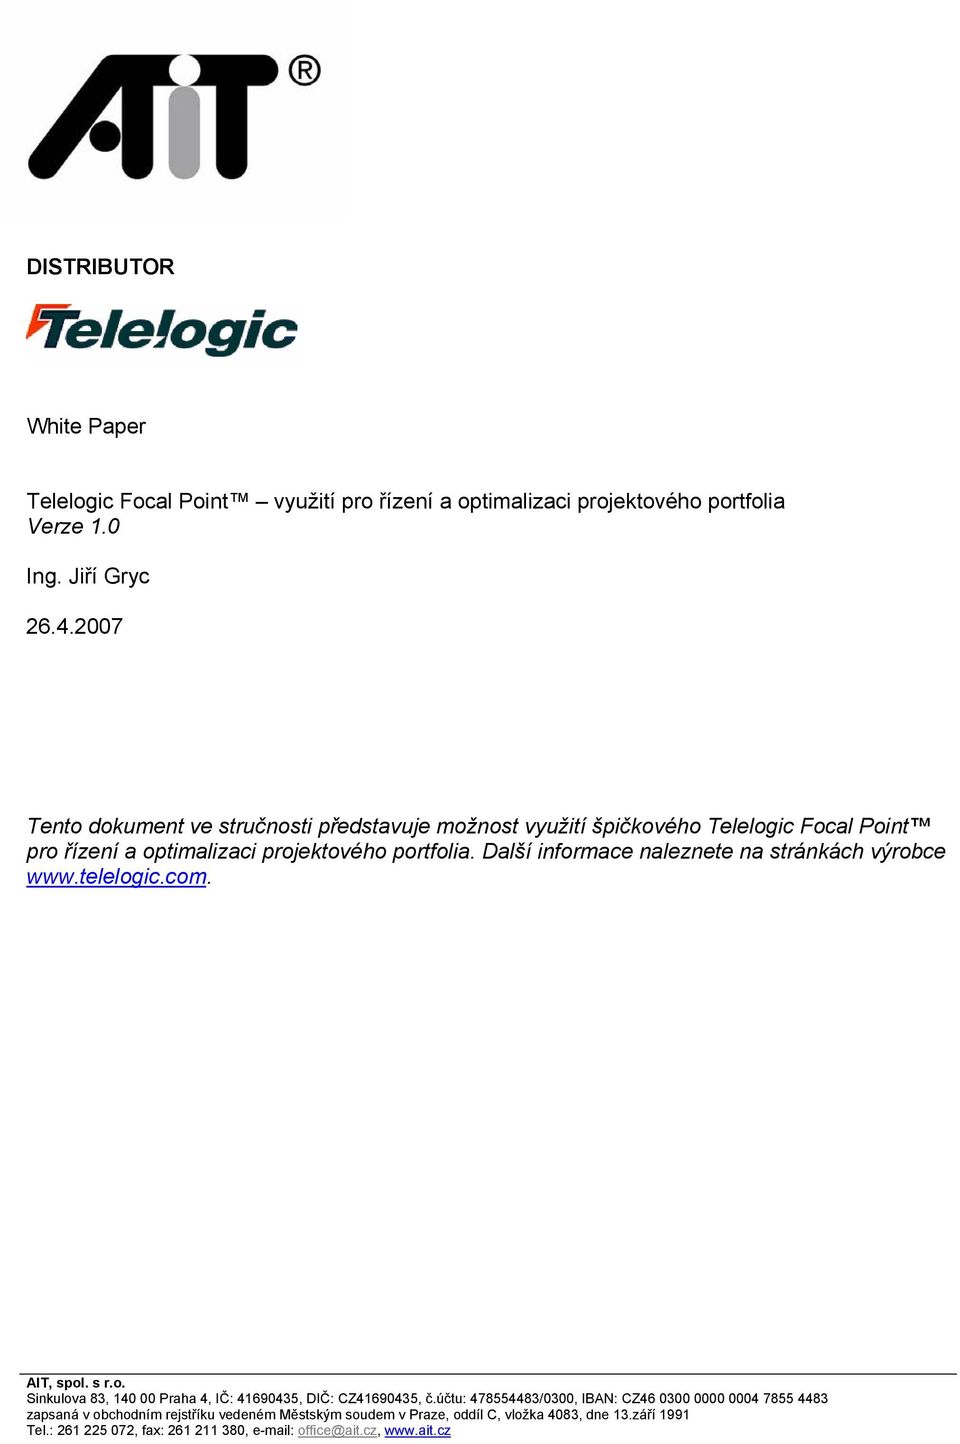 špičkového Telelogic Focal Point pro řízení a optimalizaci